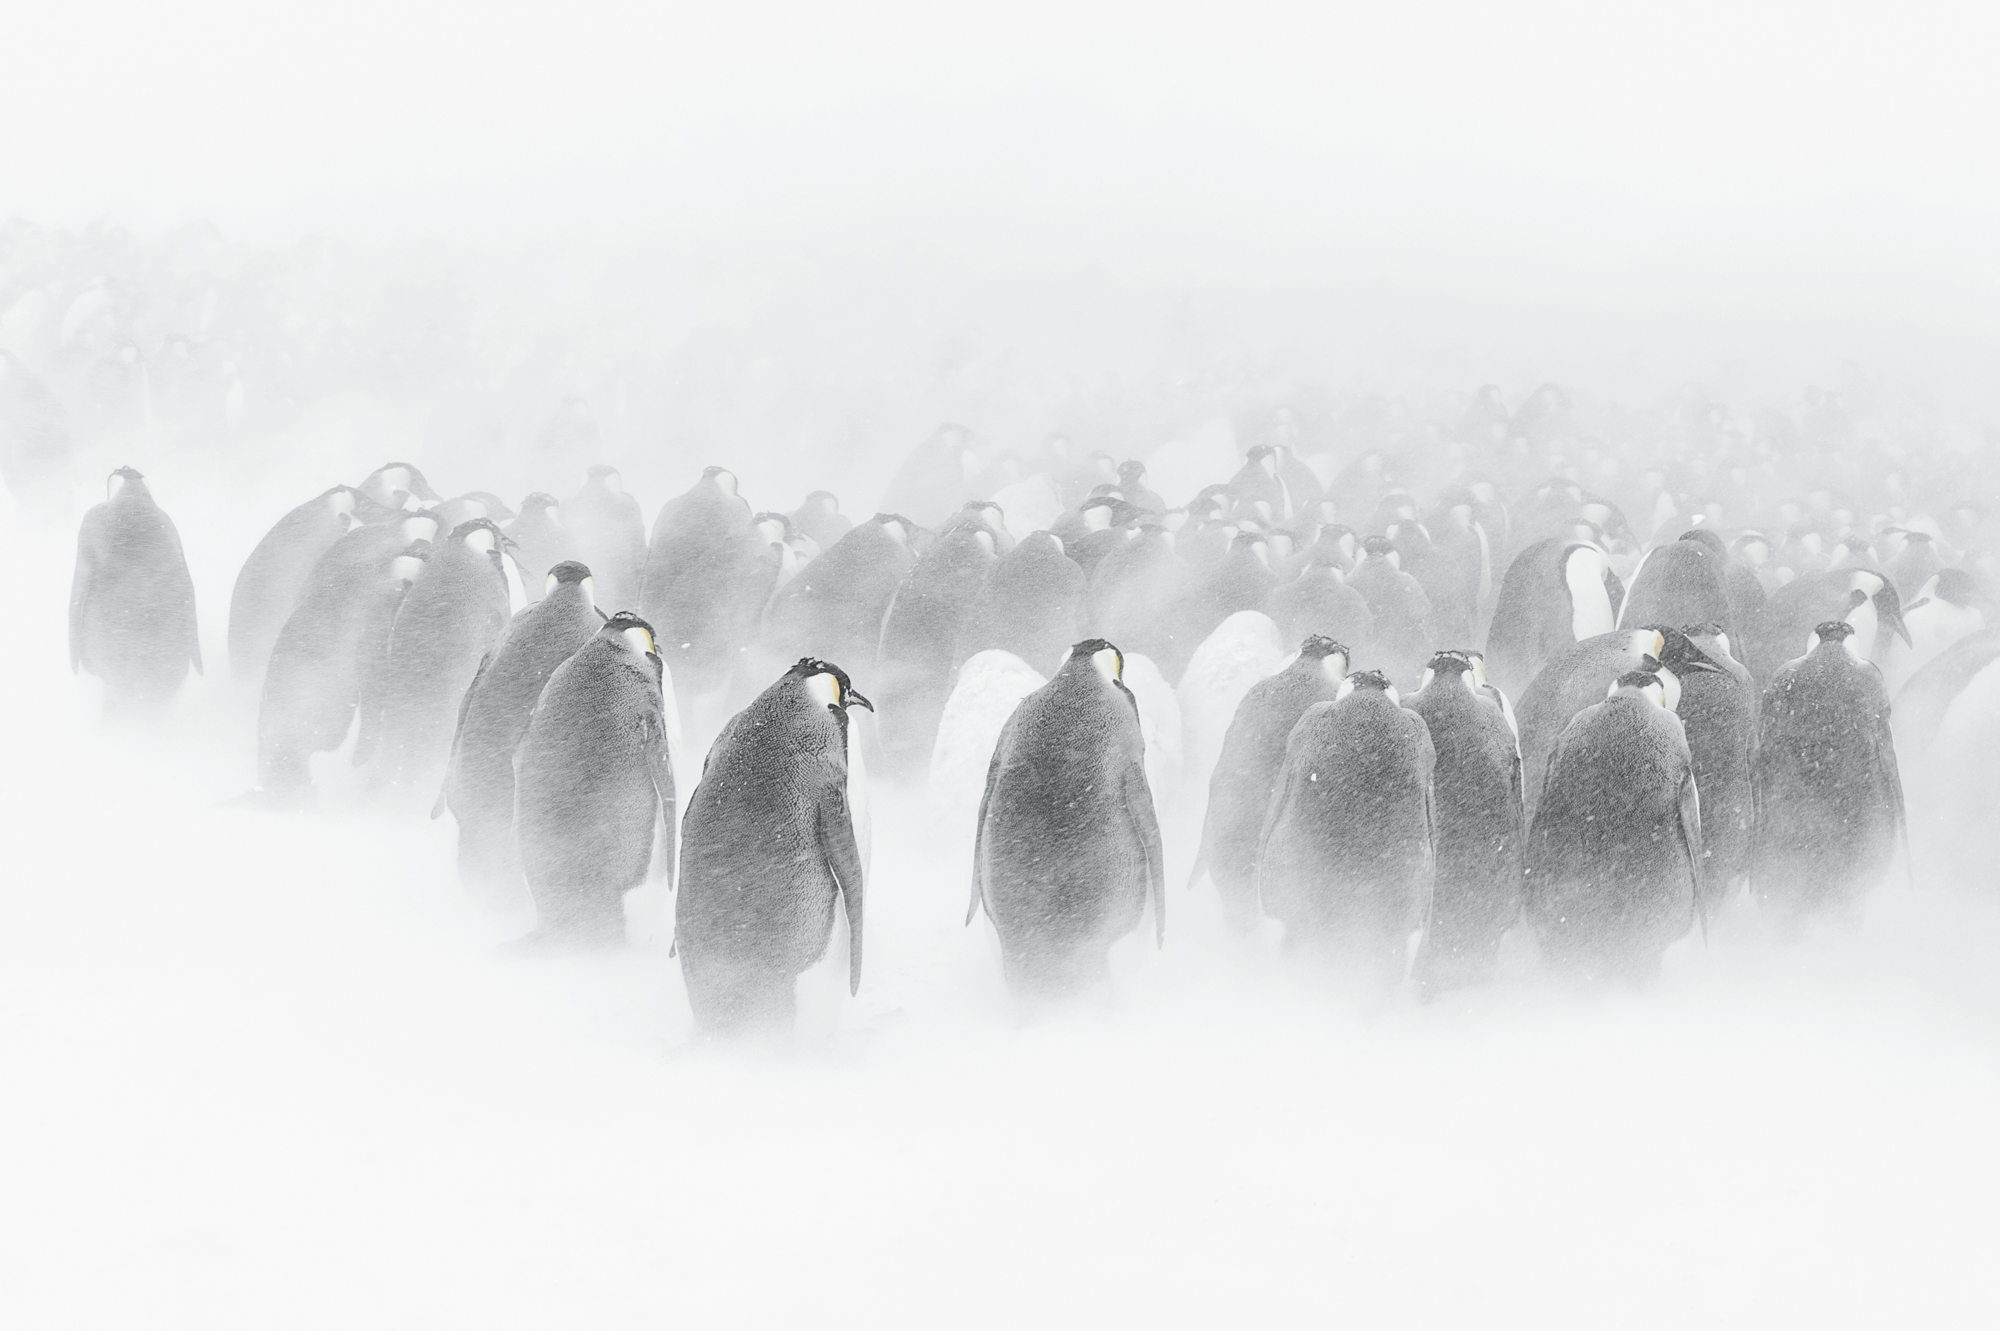 Vincent Munier (né en 1976), Manchots empereurs, Terre Adélie, Antarctique, 2015. Photo service de presse. © Vincent Munier